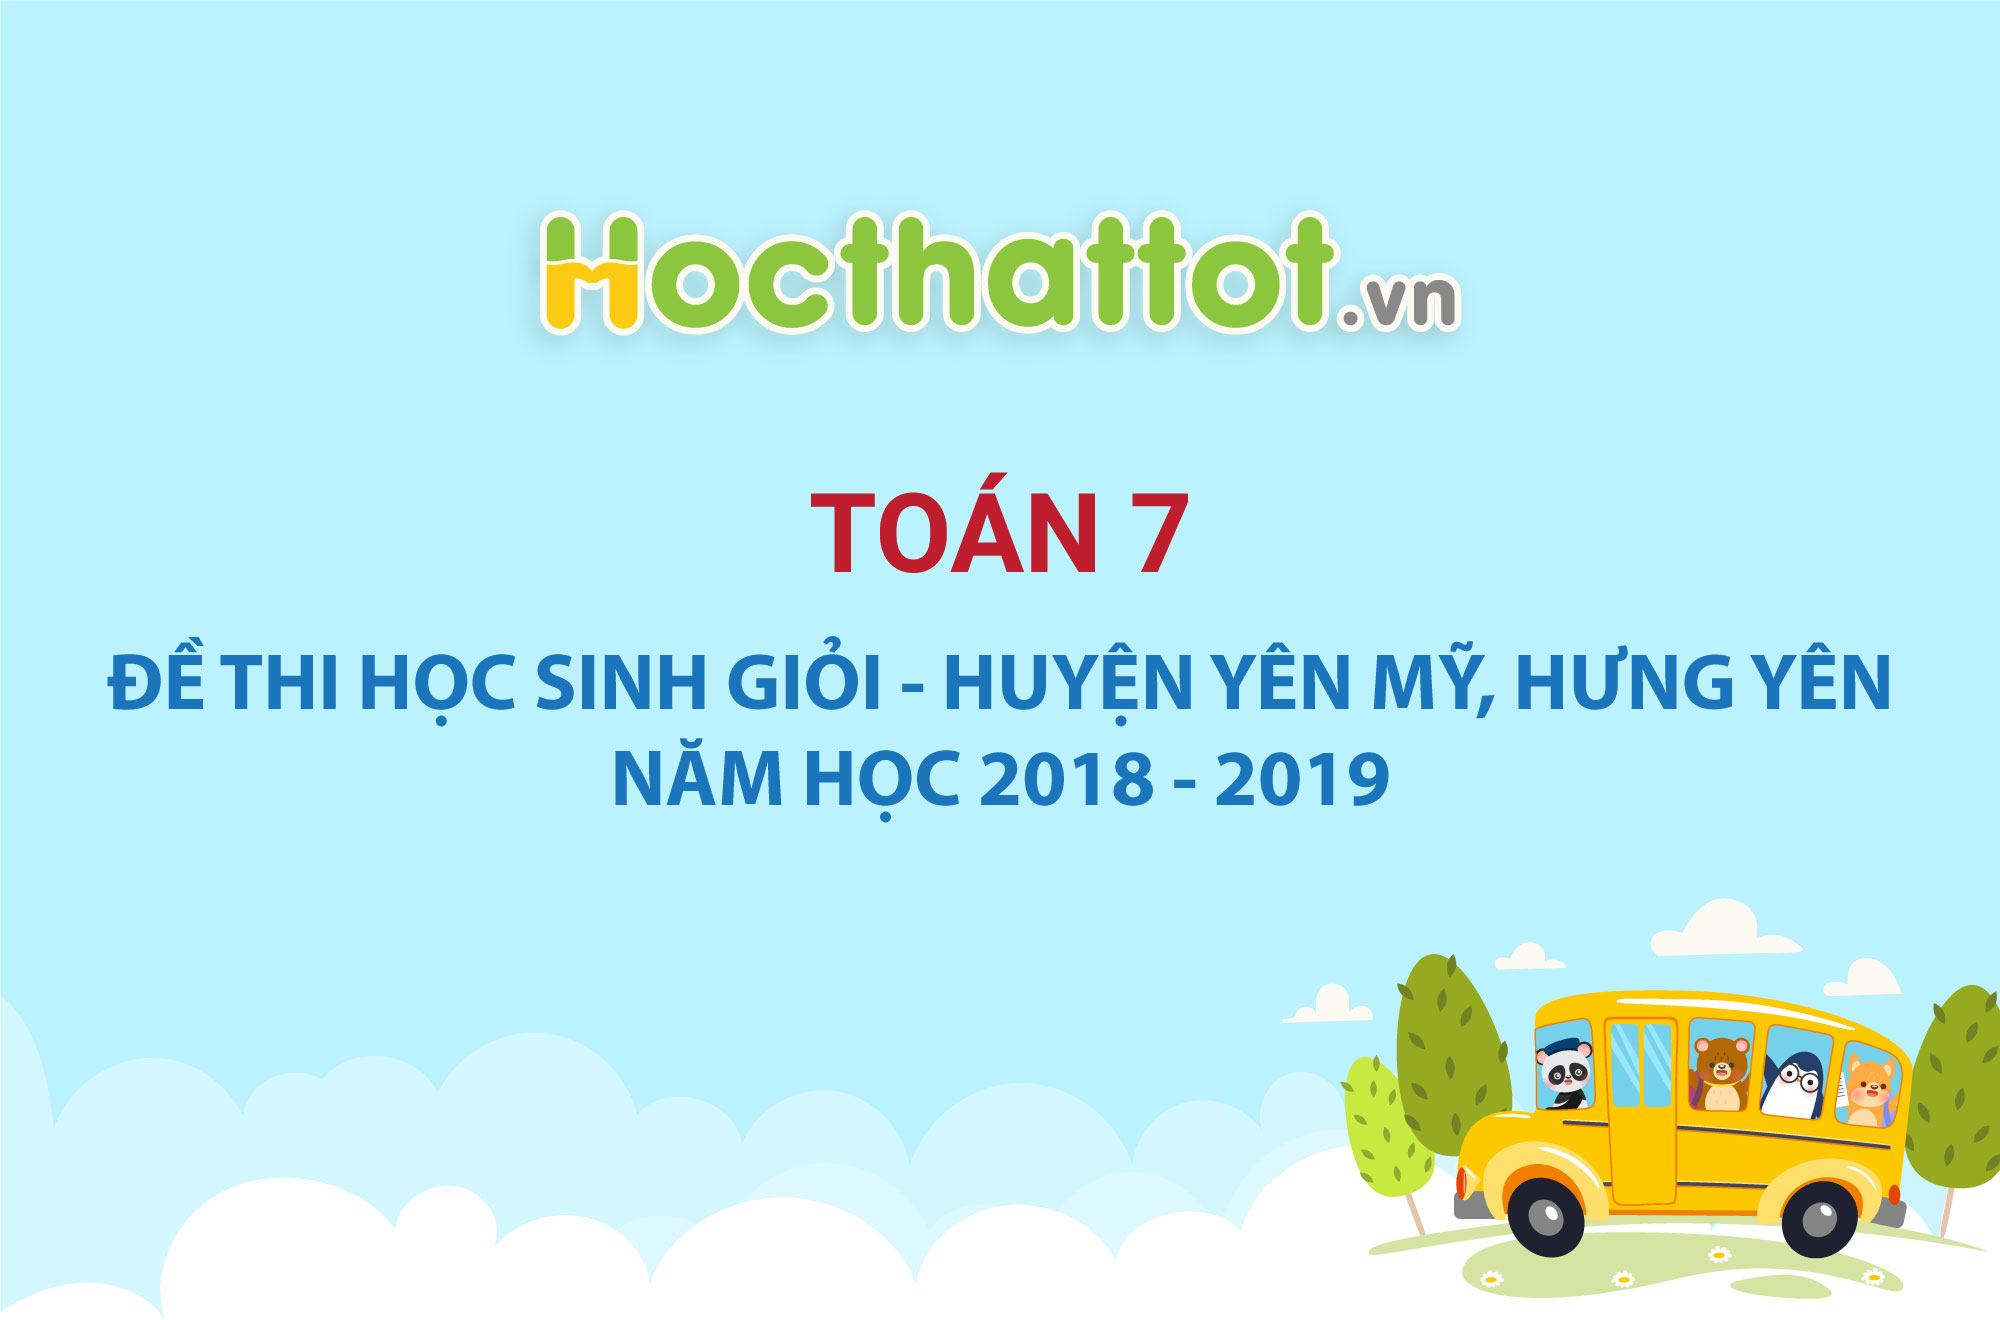 hsg-7-yen-my-hung-yen-2019